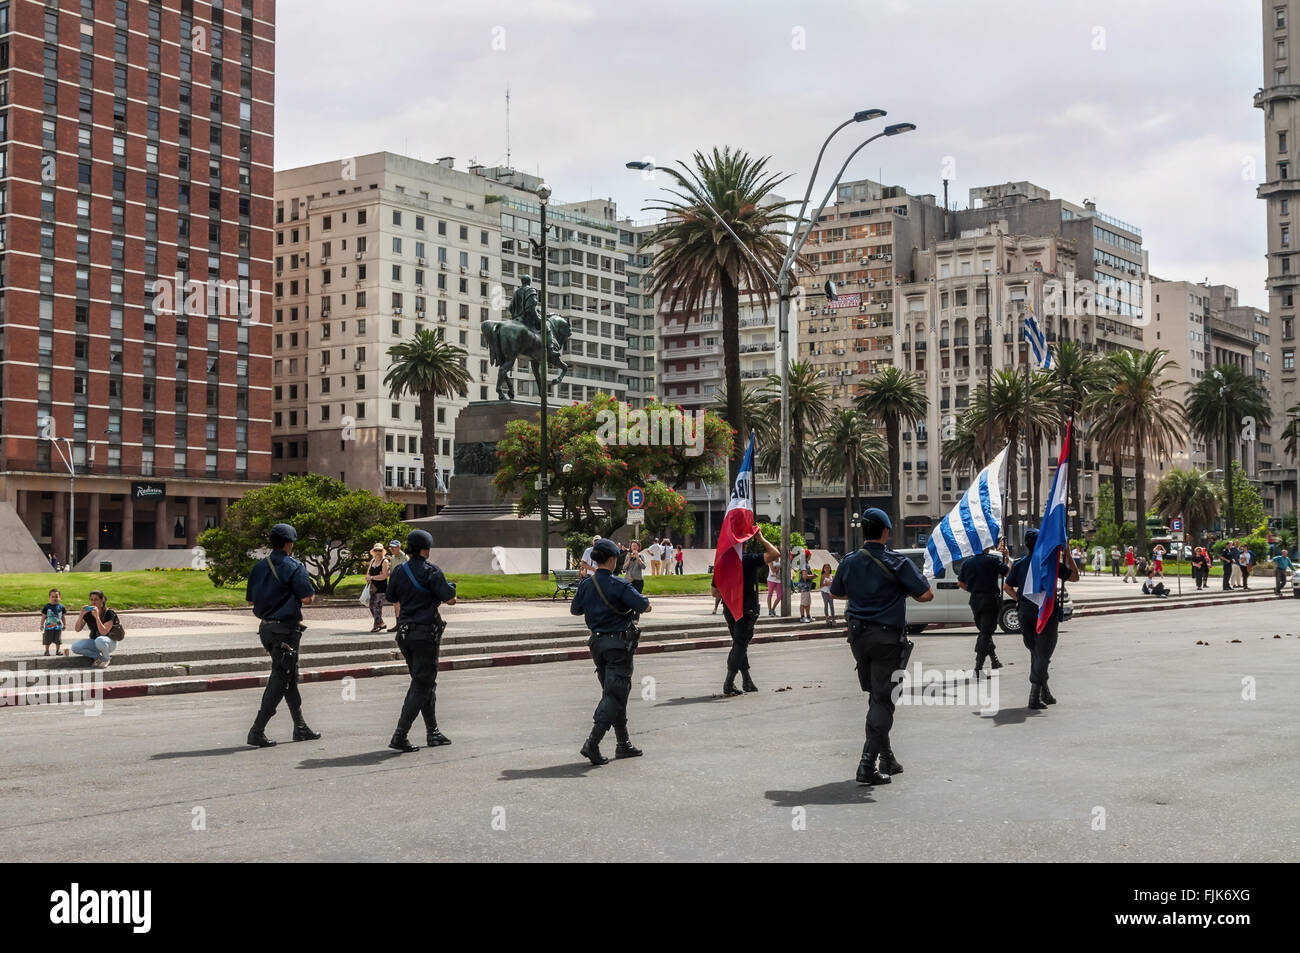 La police de l'état en mars la parade en plein cœur du centre-ville de Montevideo sur la Plaza Independencia Banque D'Images